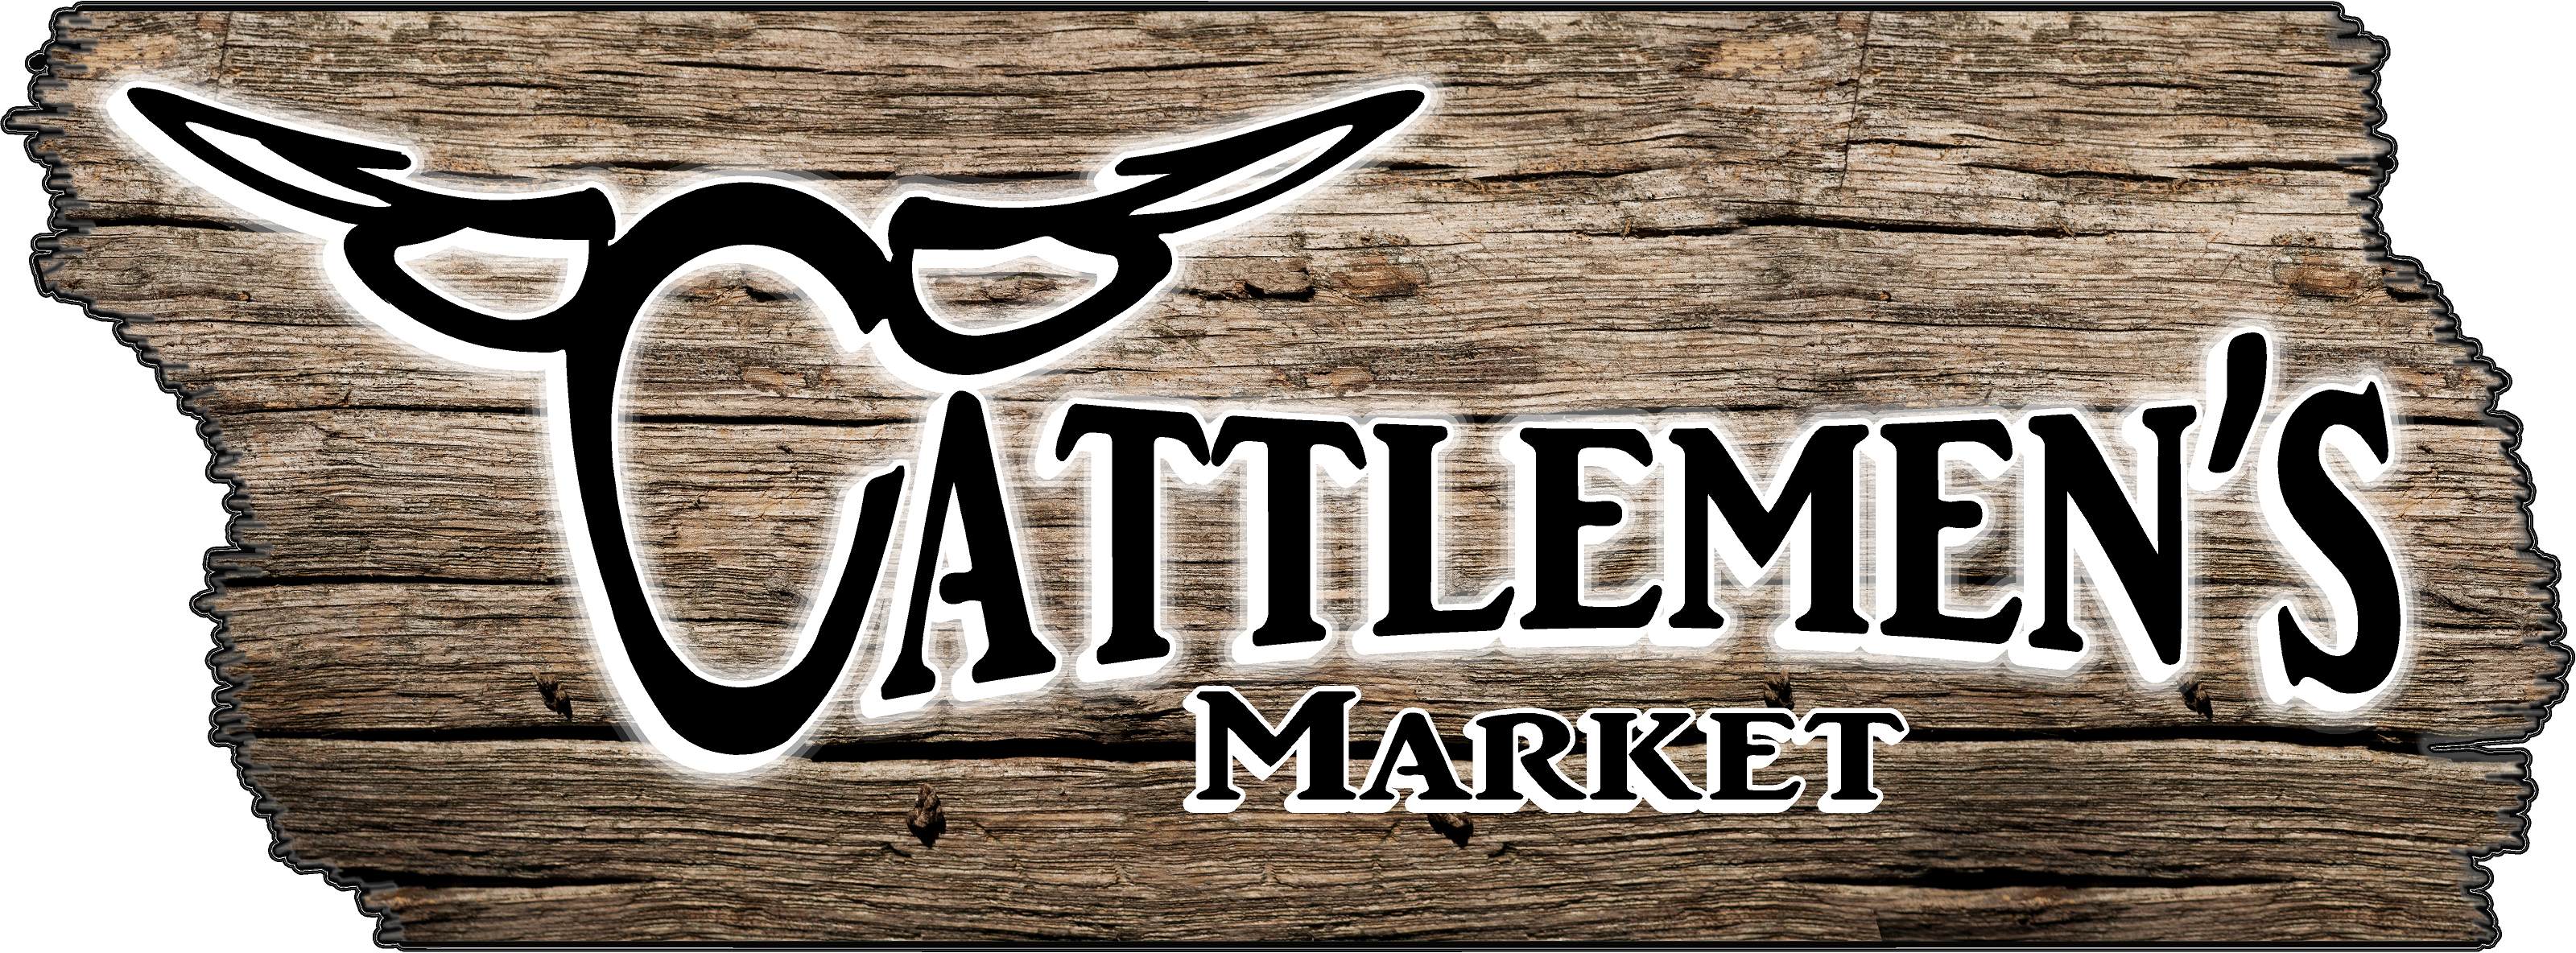 Cattlemen's Market